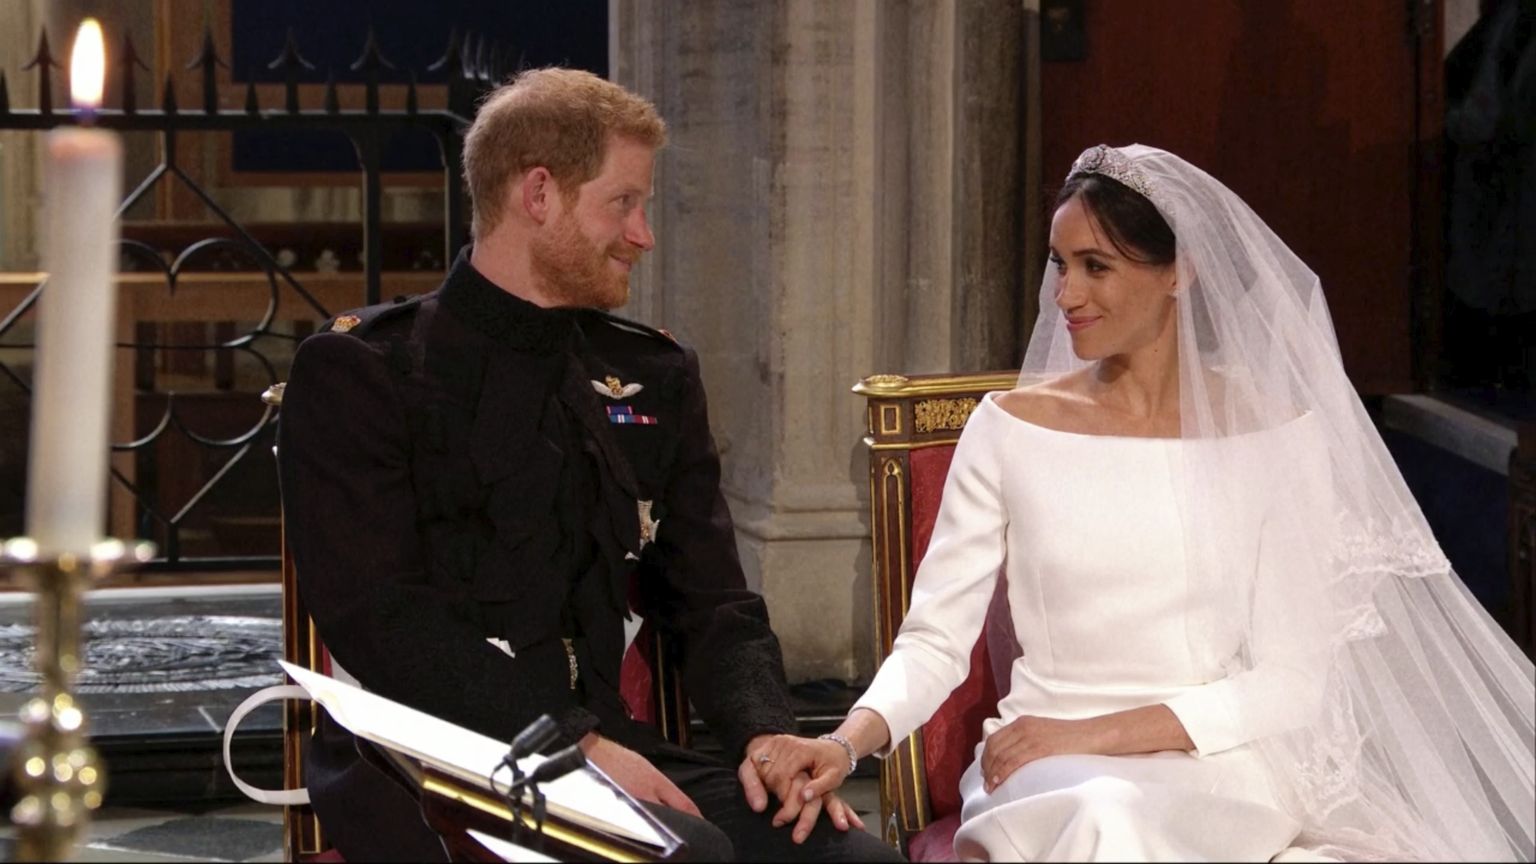 Prints Harry ja Meghan Markle'i laulatus 19. mail 2018 Windsori lossi St. George'i kabelis